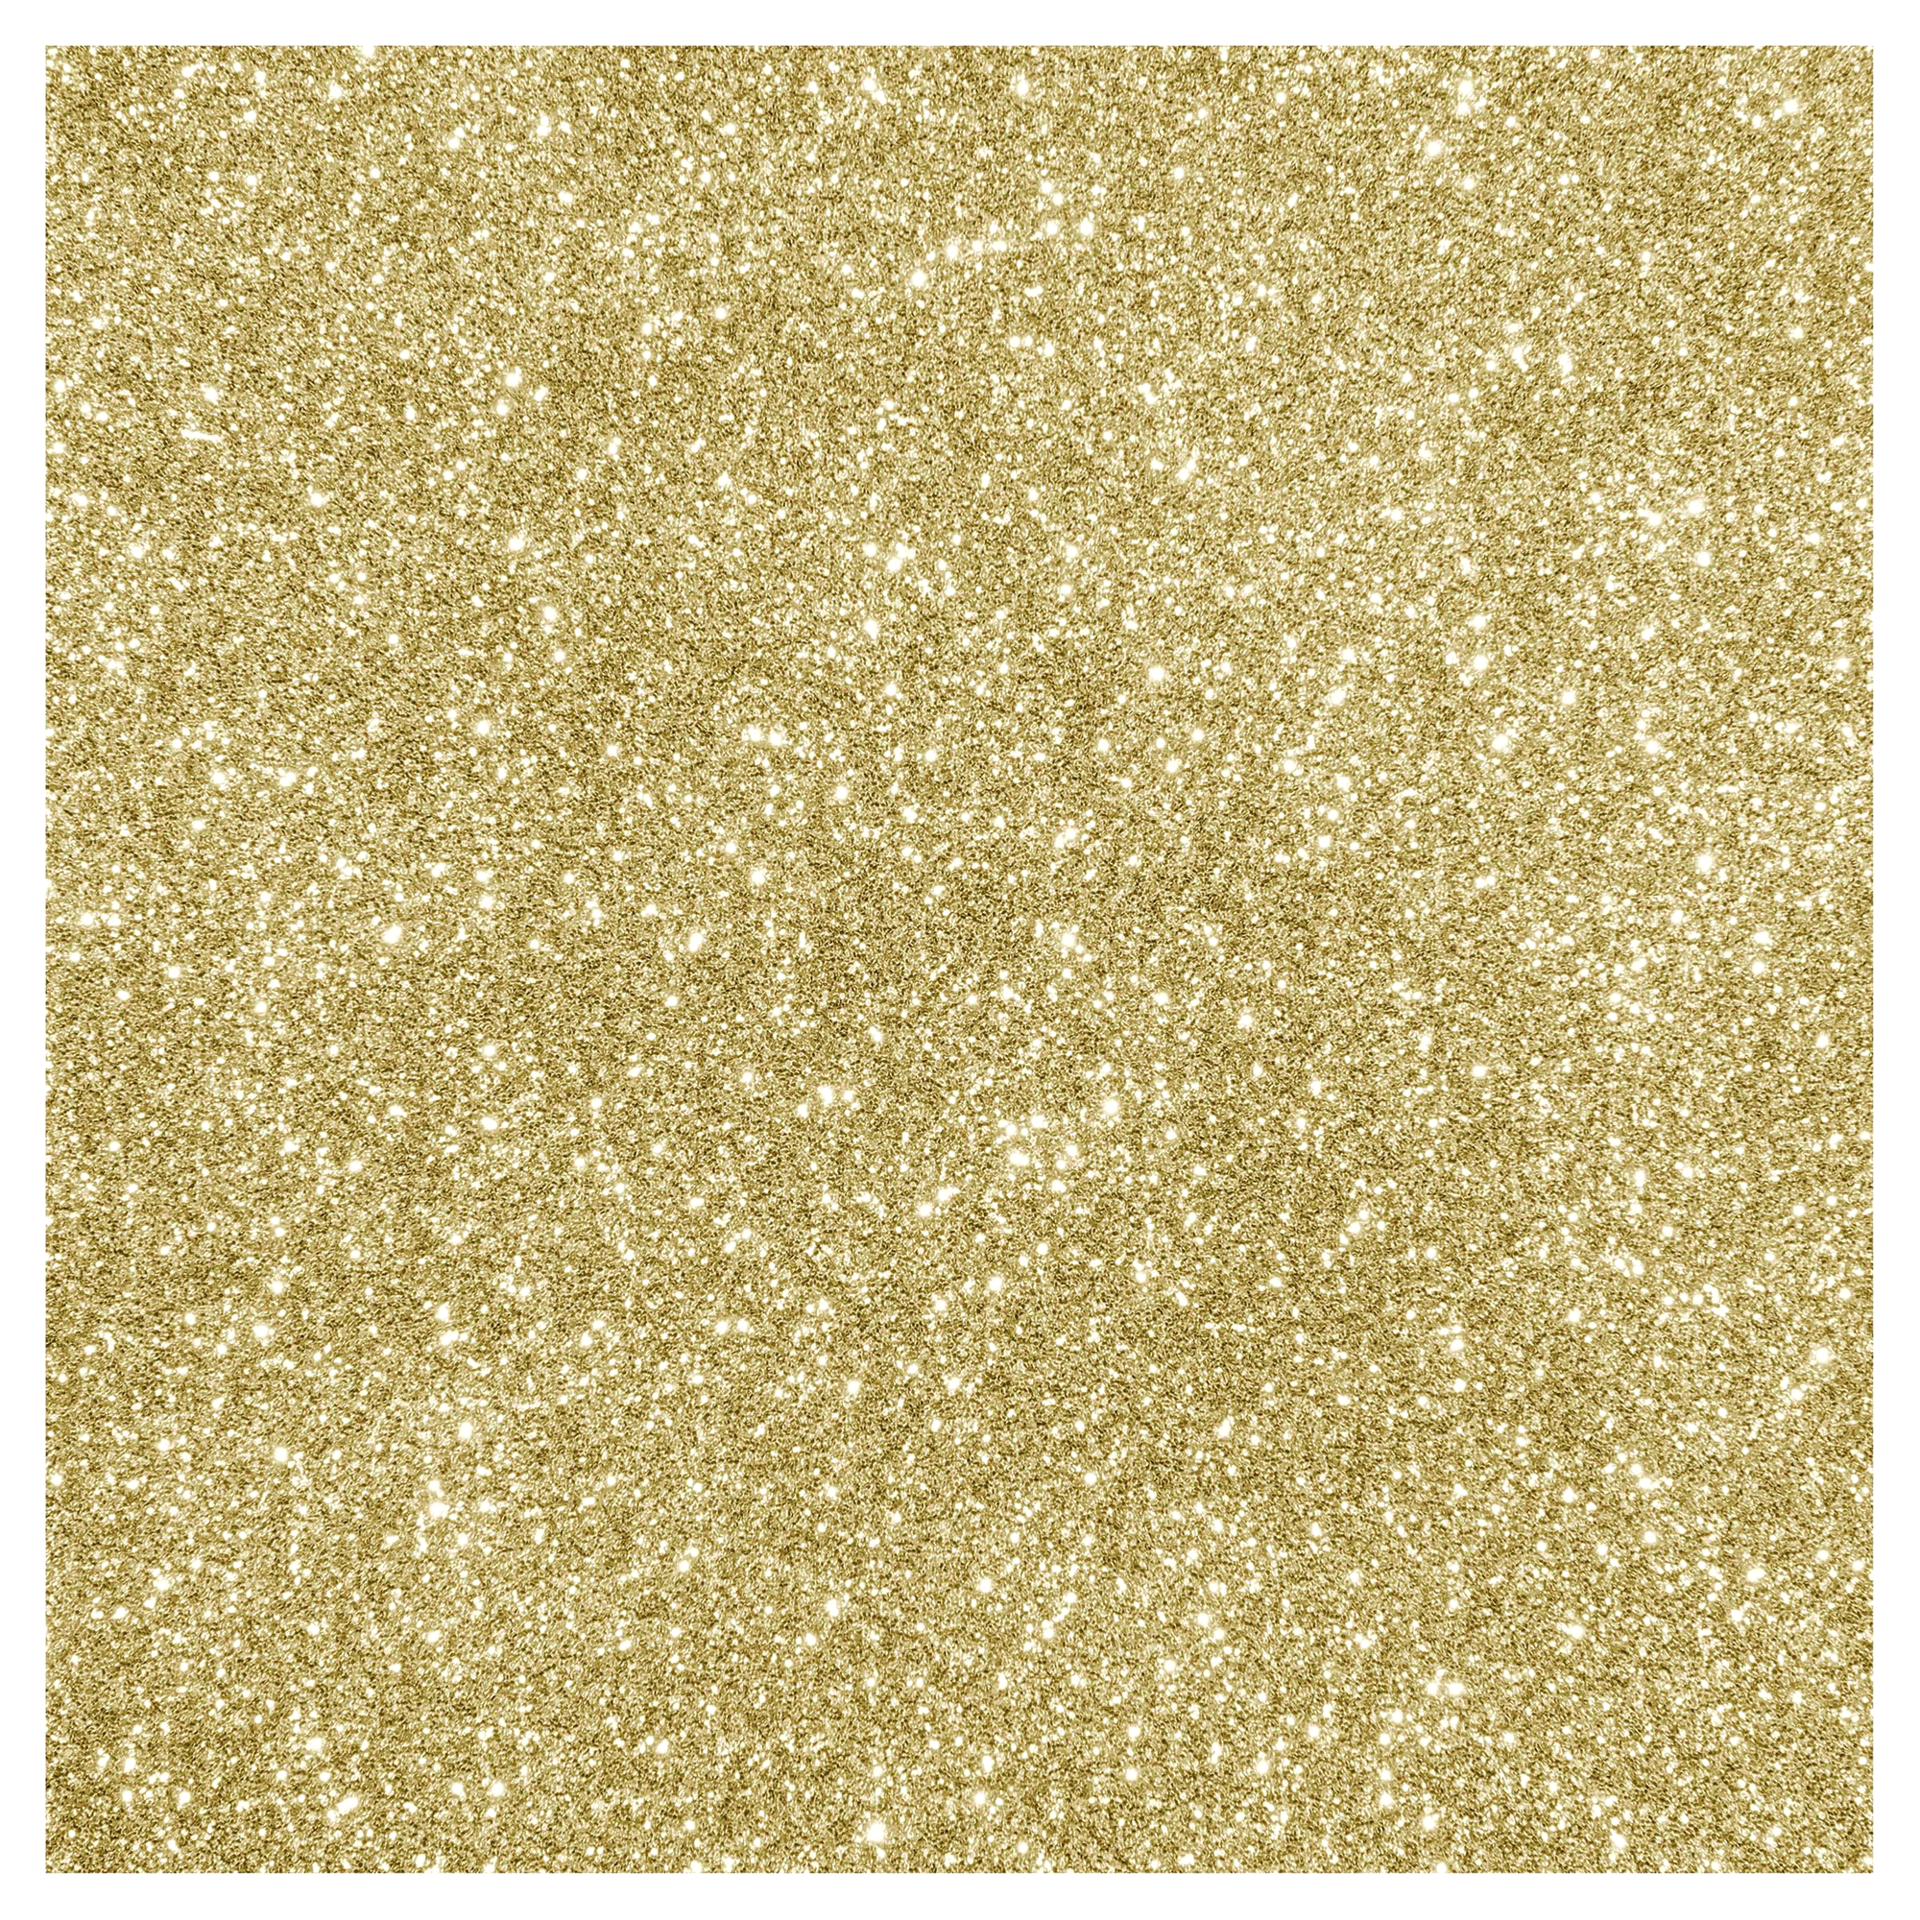 Cricut Joy Glitter Smart Iron-On Gold